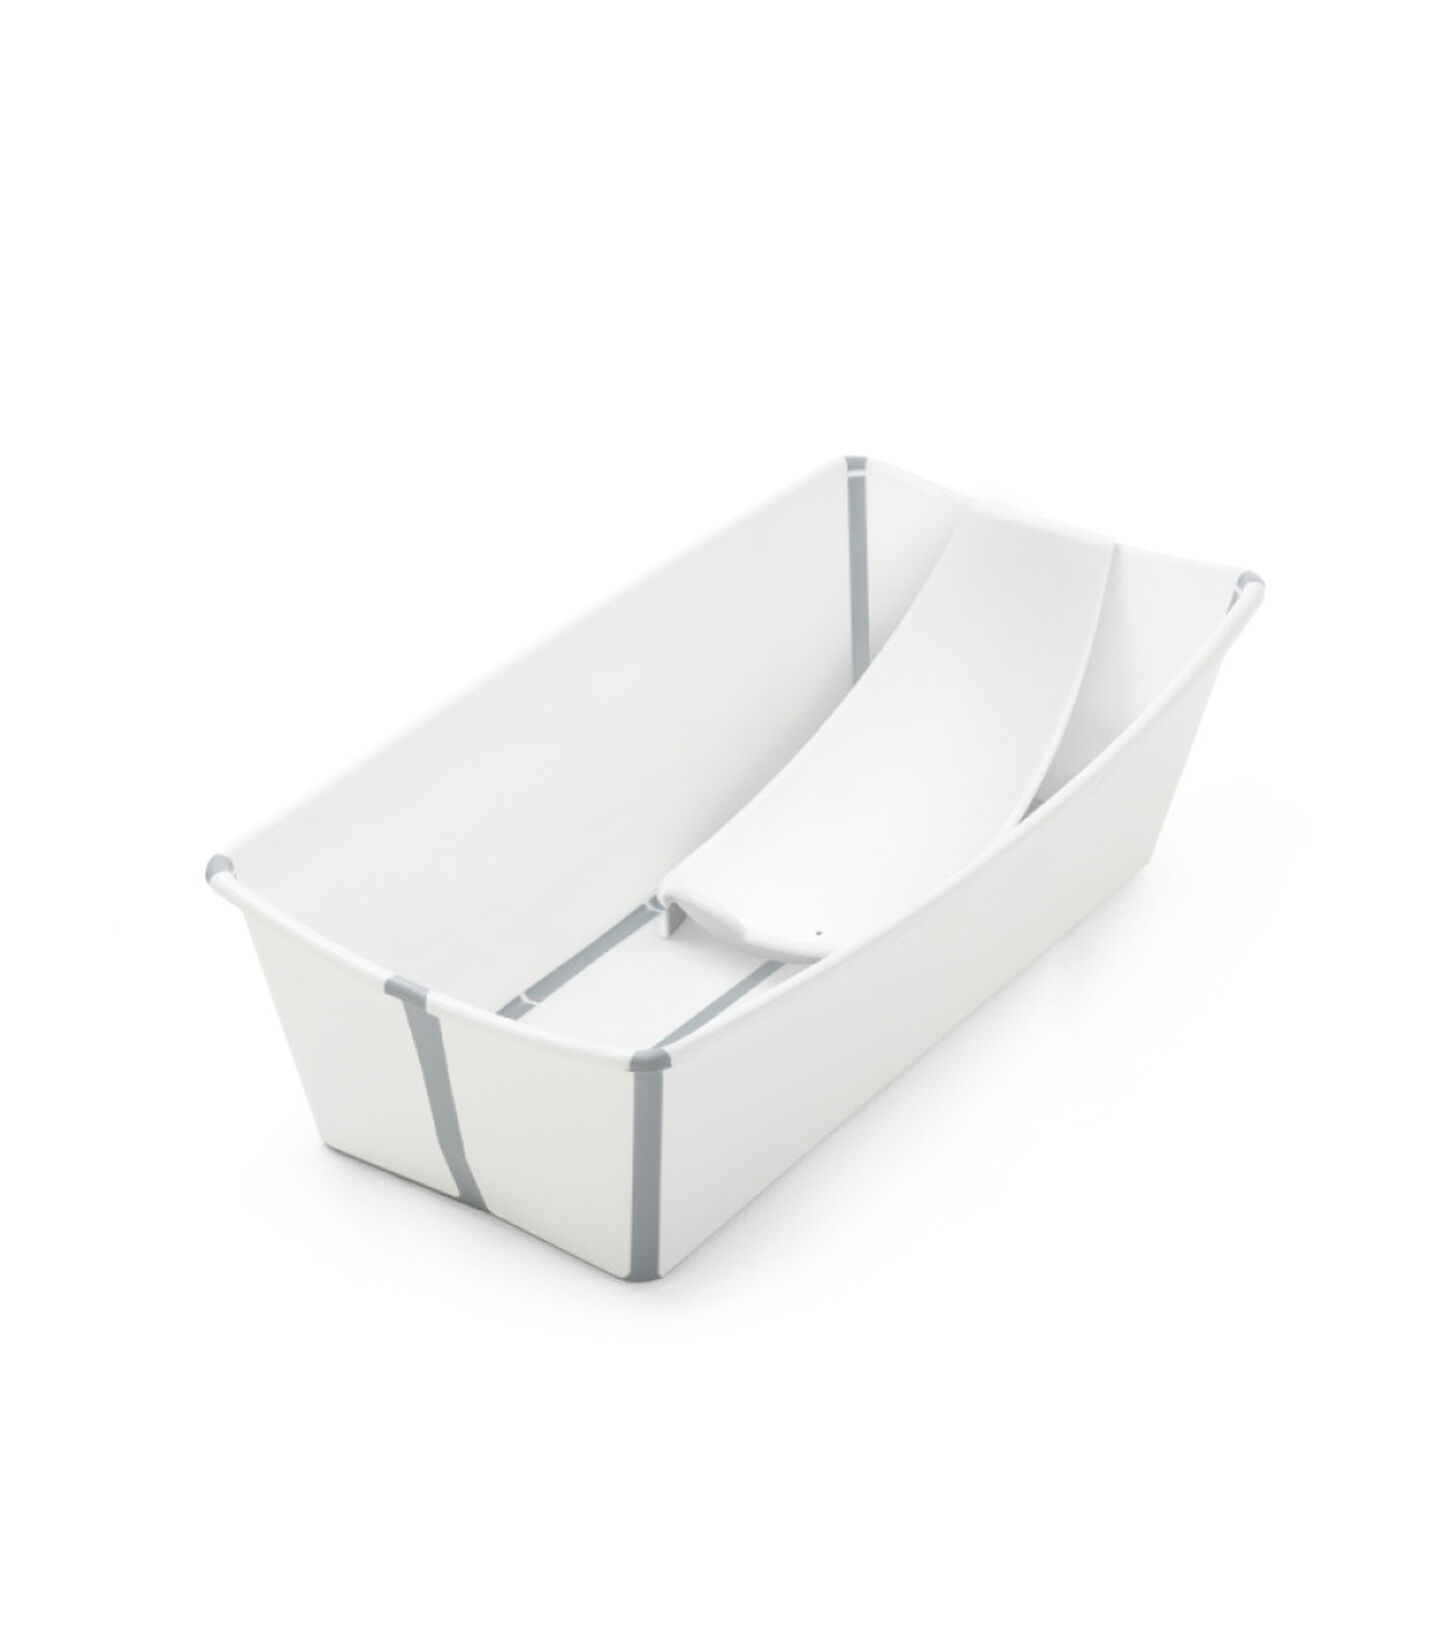 Zestaw Stokke® Flexi Bath® X-Large w kolorze białym, Biały, mainview view 1